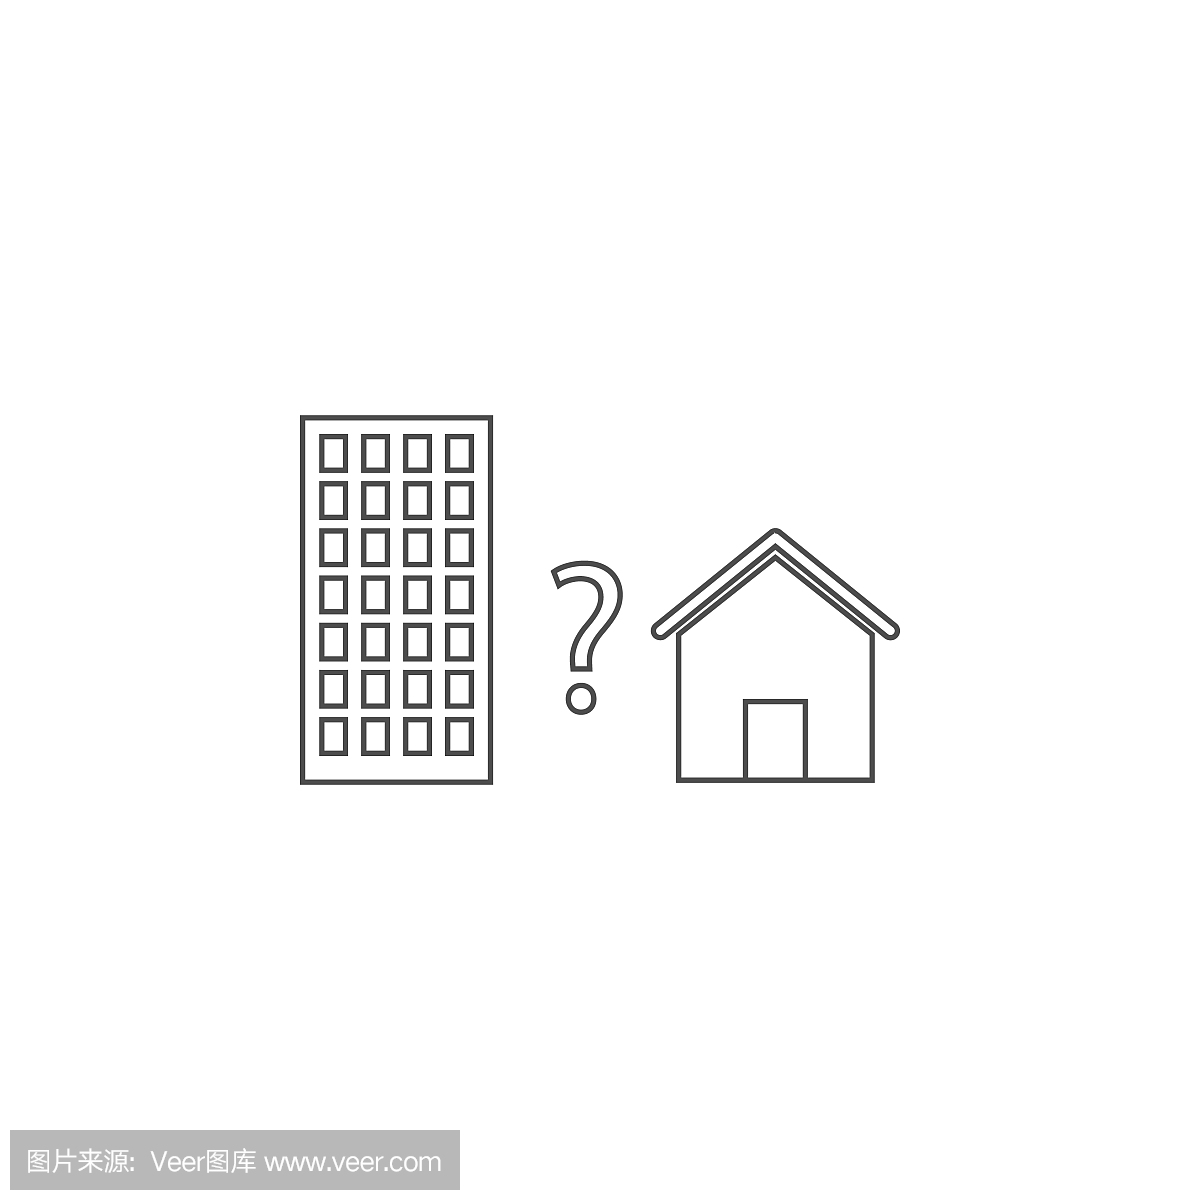 公寓或房子的图标。移动概念和web应用程序的